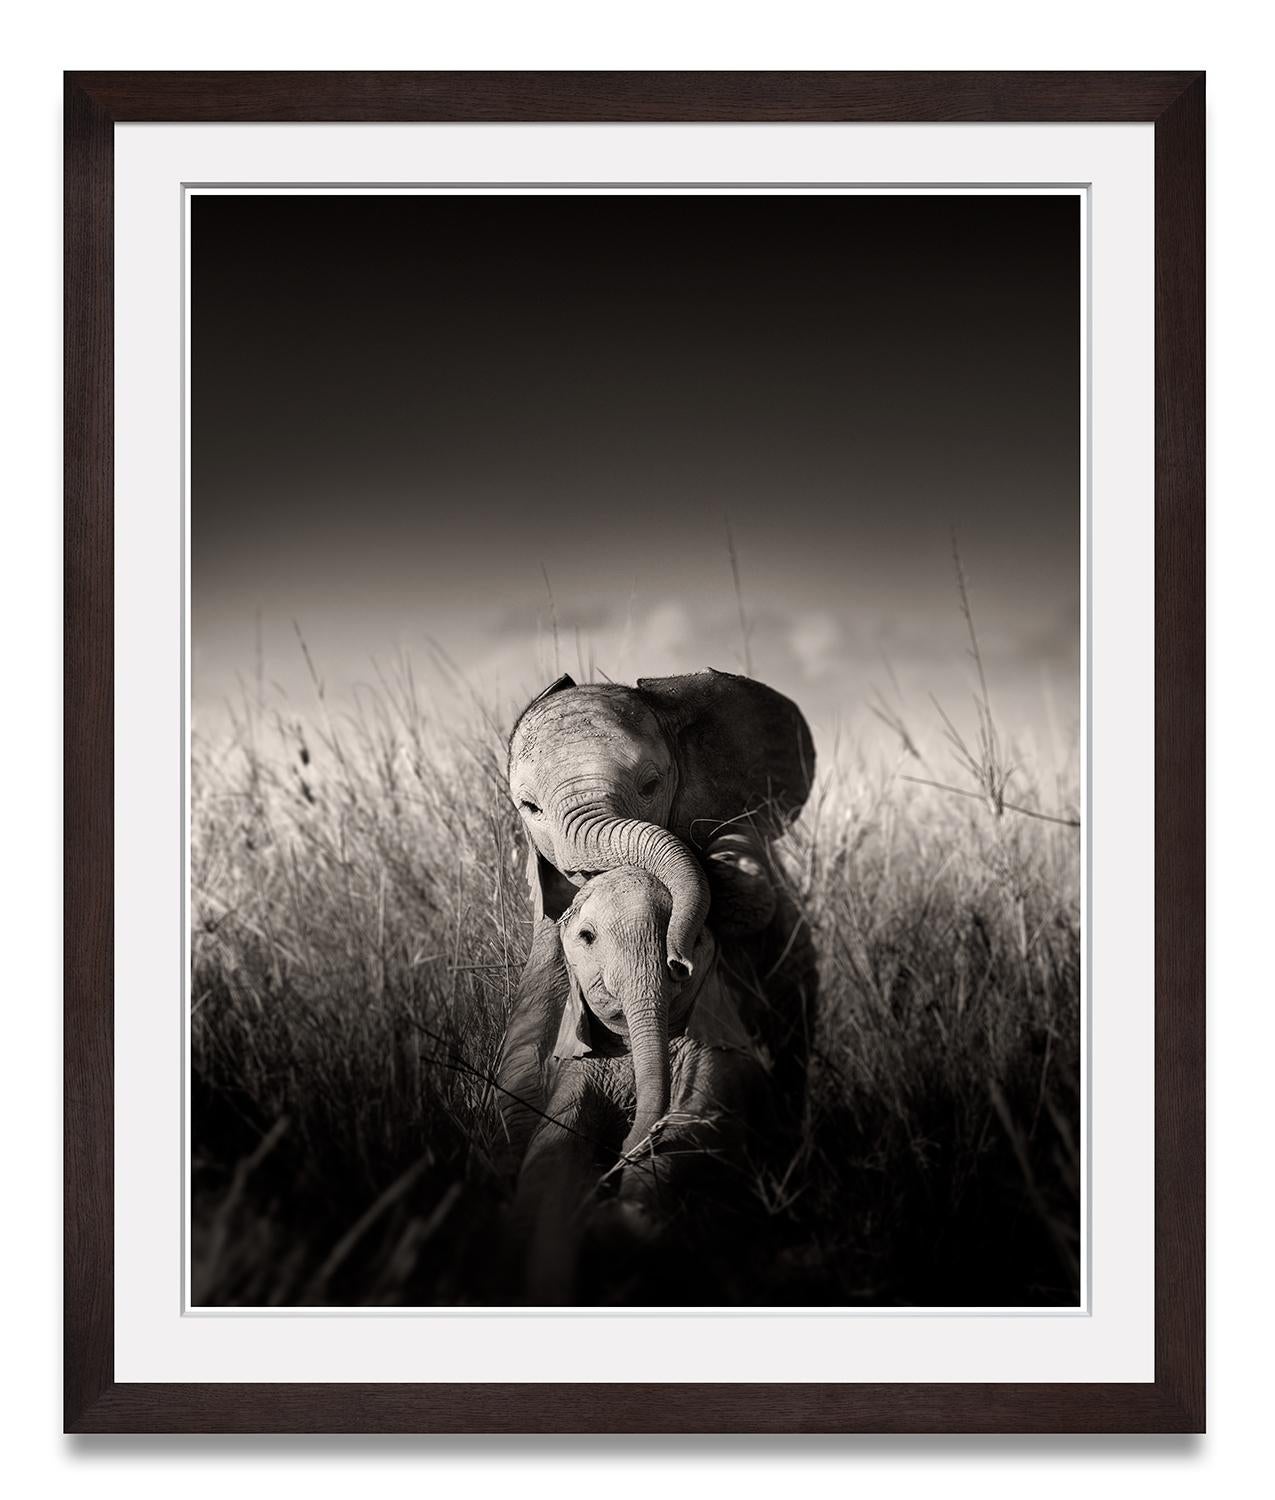 Wilde Elefanten spielende Babys, Tier, Tierwelt, Schwarz-Weiß-Fotografie – Photograph von Joachim Schmeisser